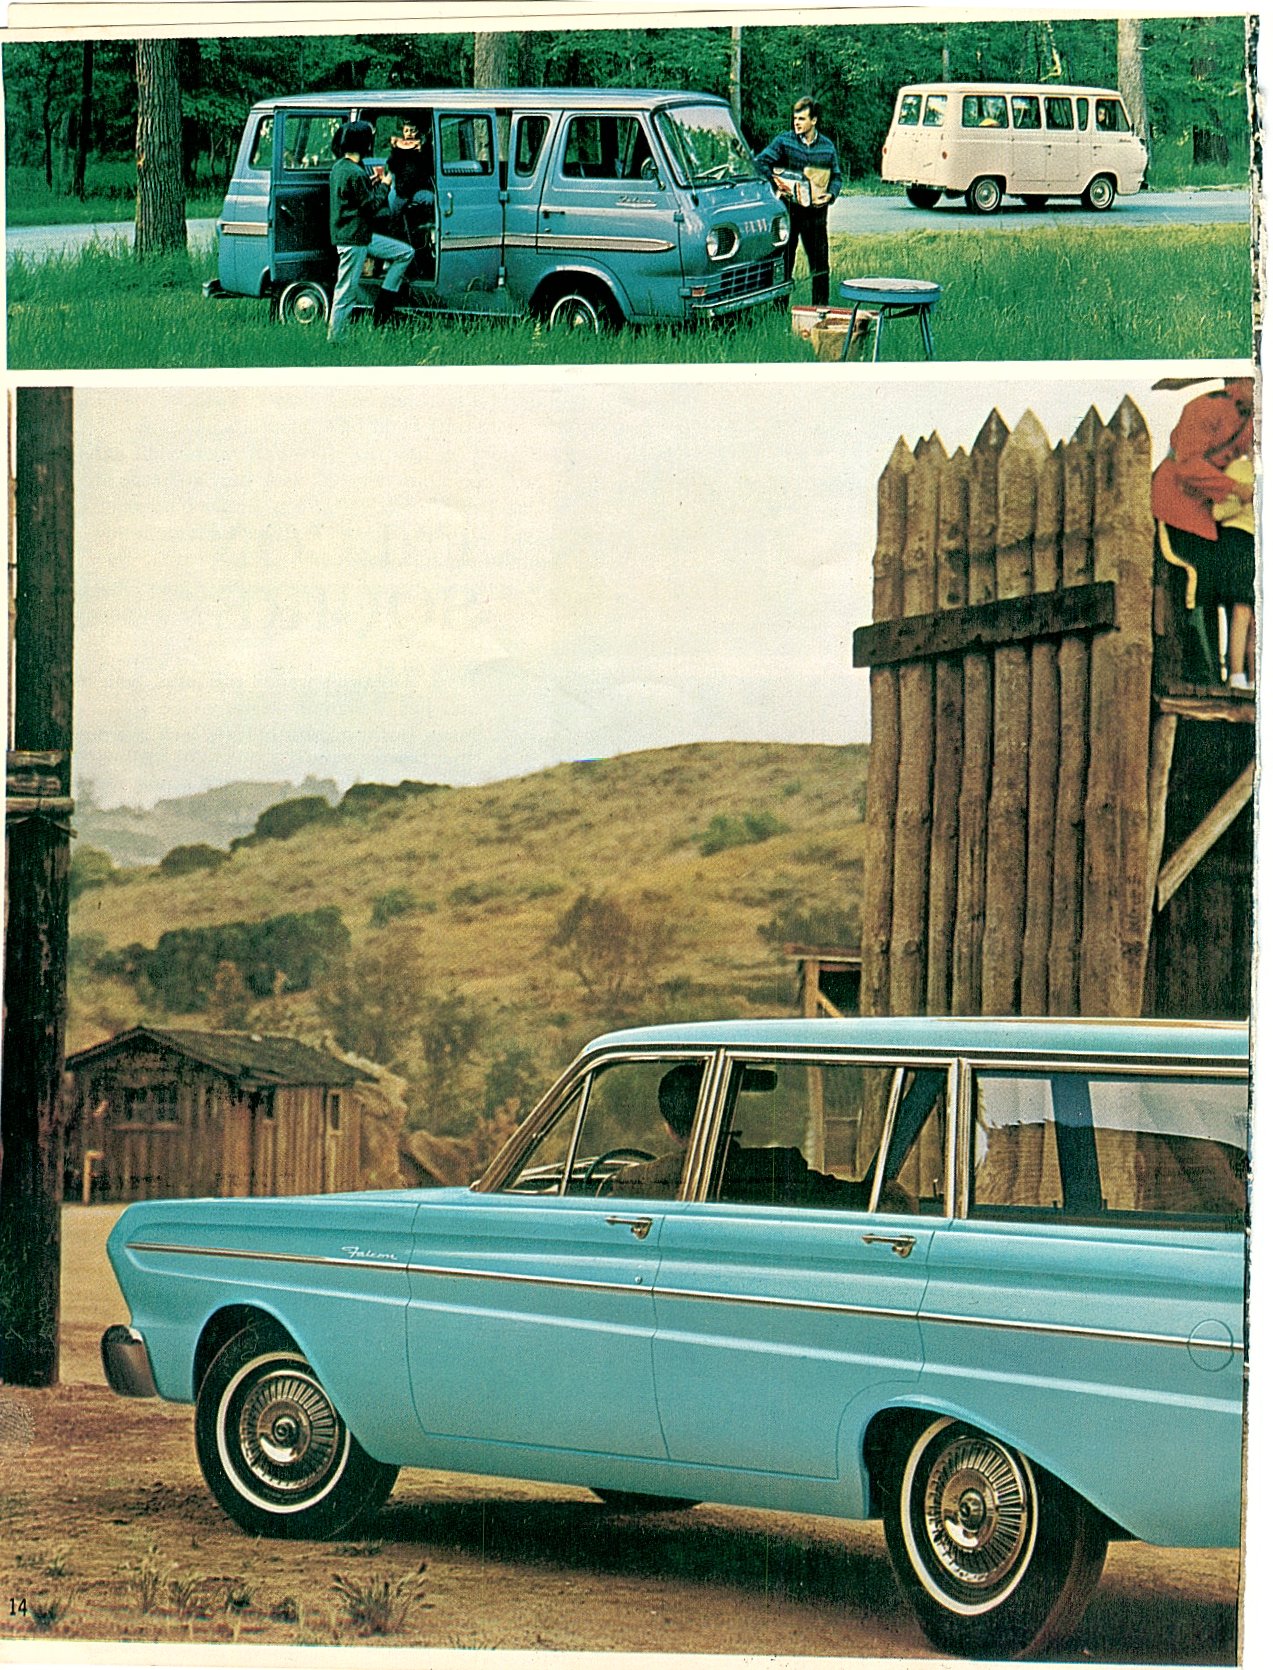 1964 Ford Falcon-14